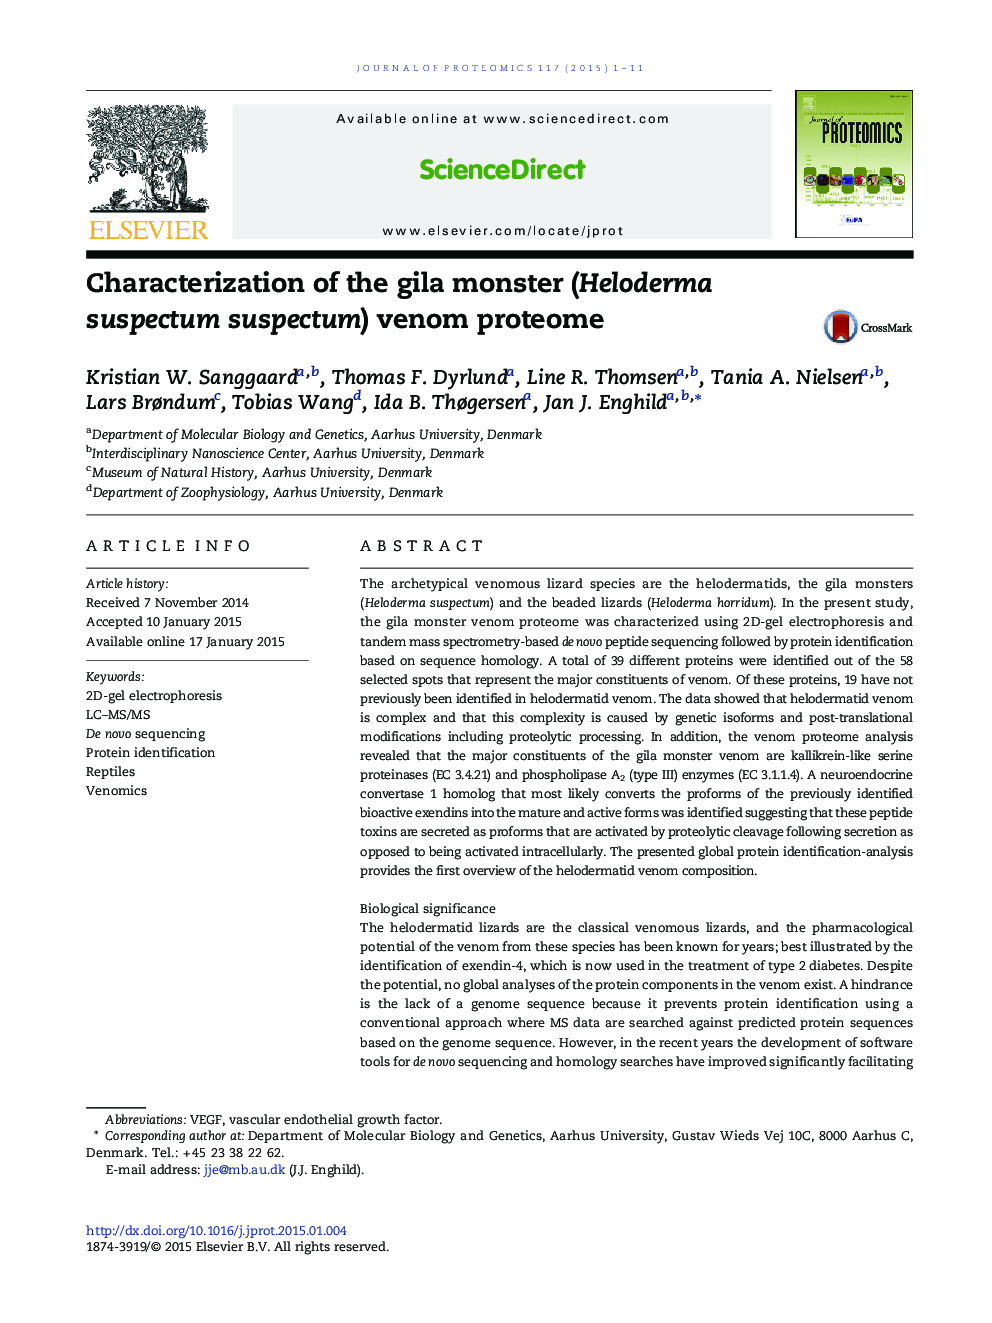 Characterization of the gila monster (Heloderma suspectum suspectum) venom proteome